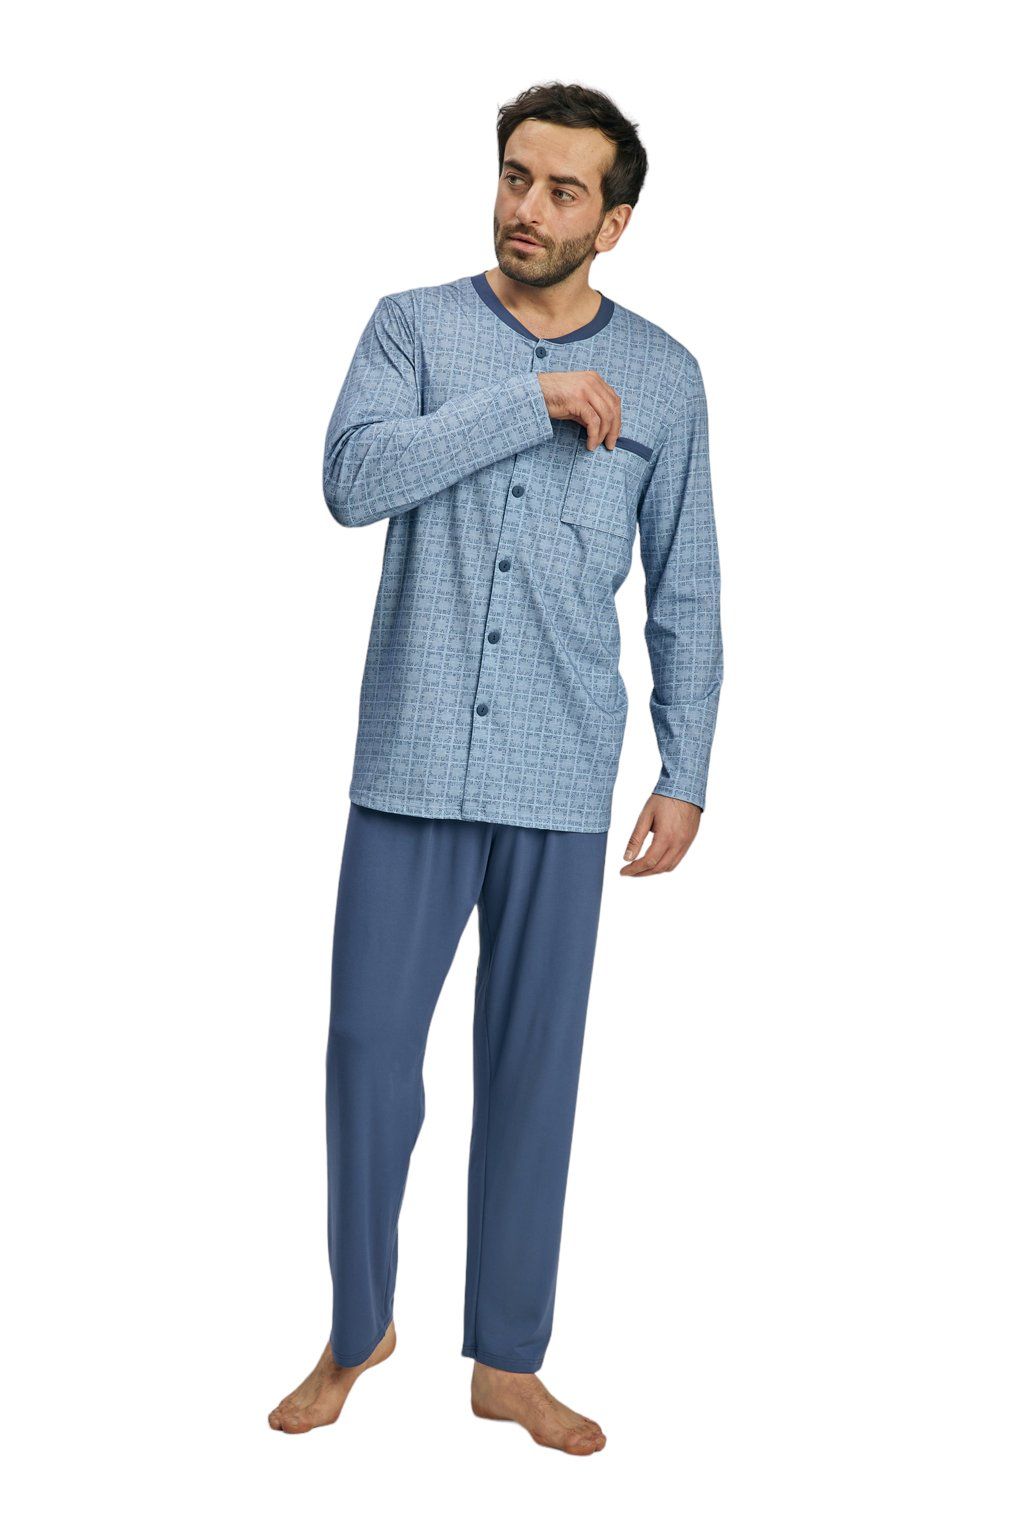 Pánské pyžamo s dlouhým rukávem, 204140 416, modrá - Velikost 3XL Wadima